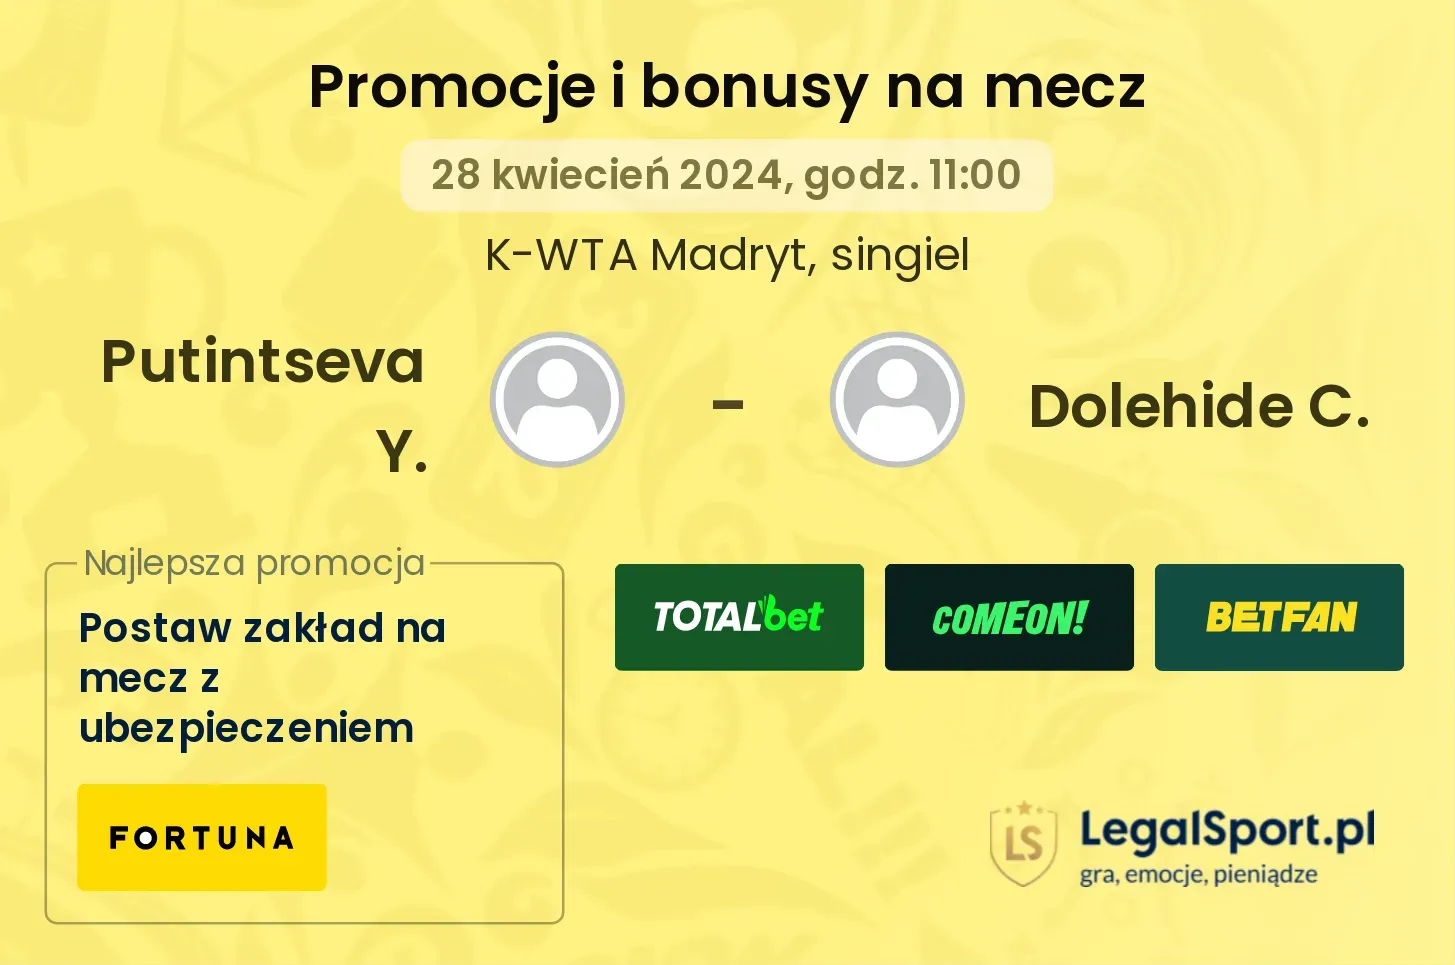 Putintseva Y. - Dolehide C. promocje bonusy na mecz